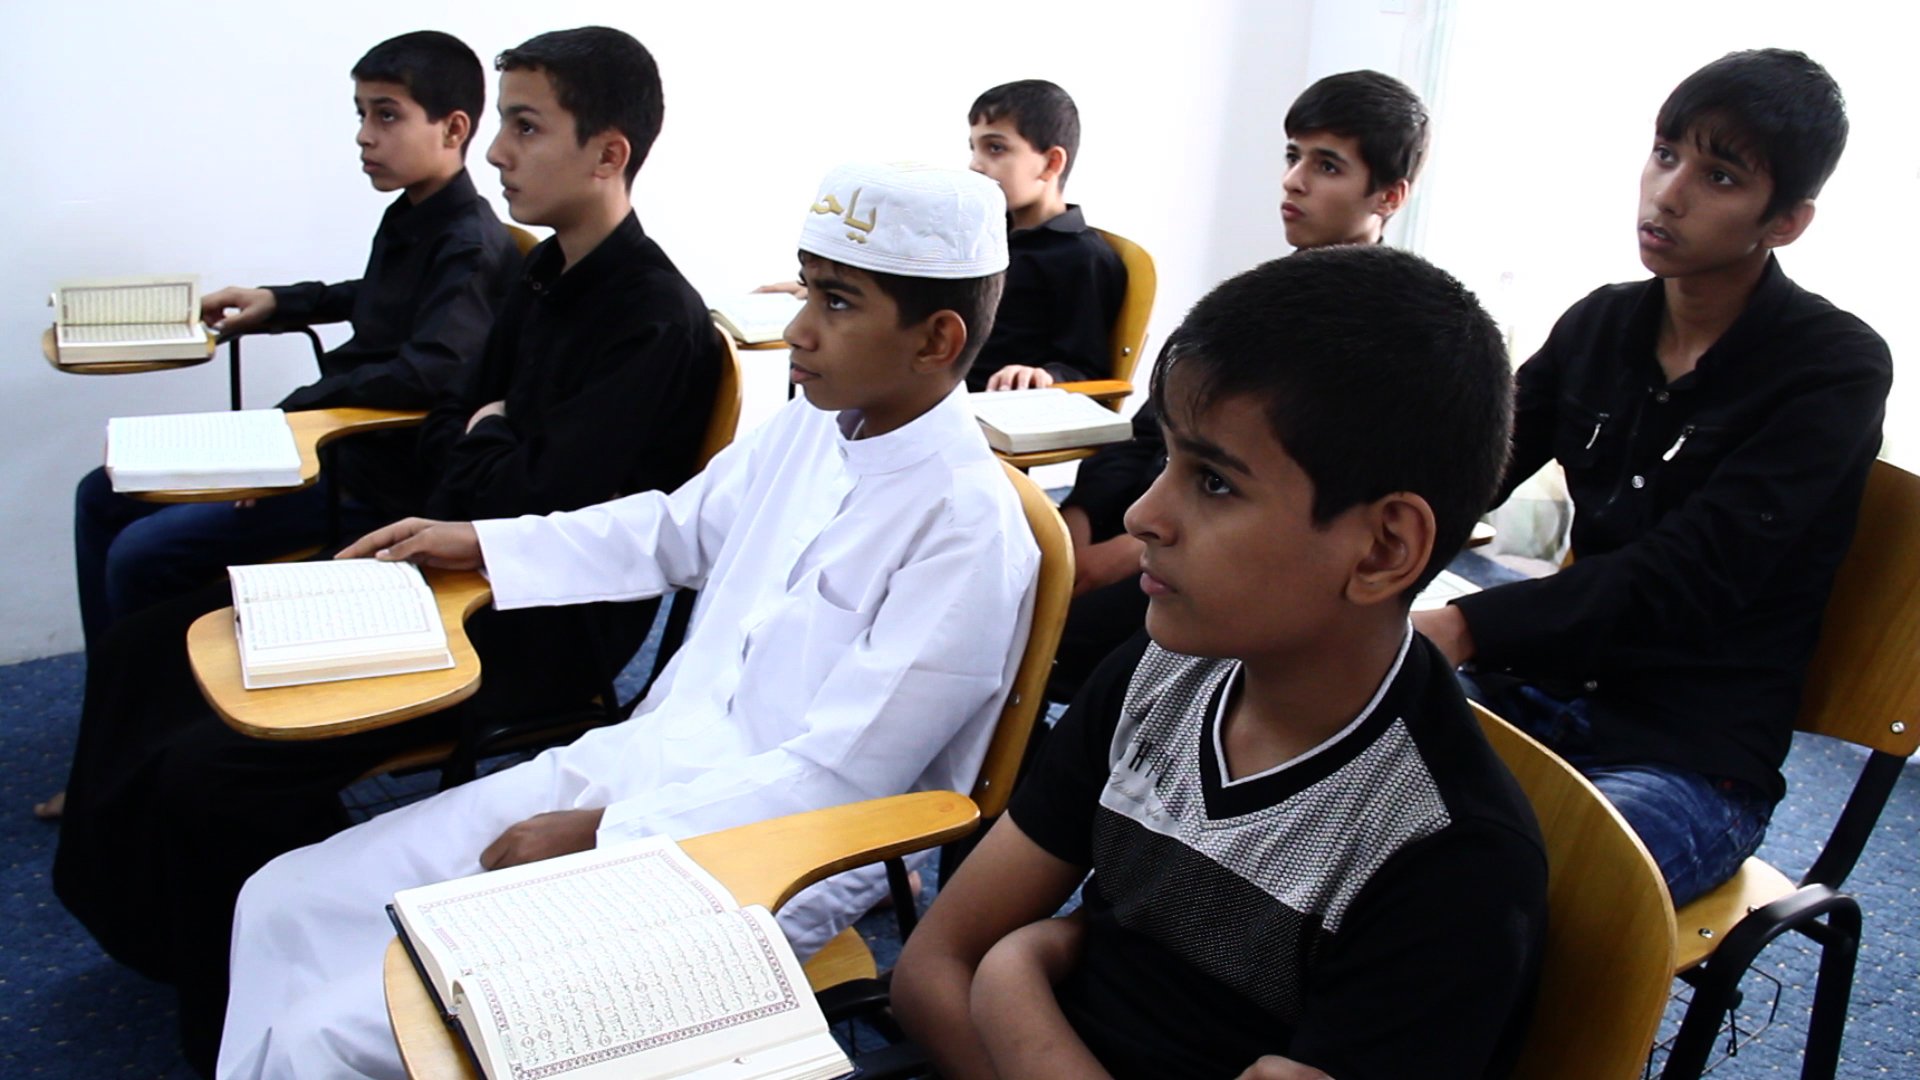 تواصل مشروع حلقات تحفيظ القرآن الكريم الذي أطلقه معهد القرآن الكريم التابع للعتبة العباسية المقدسة